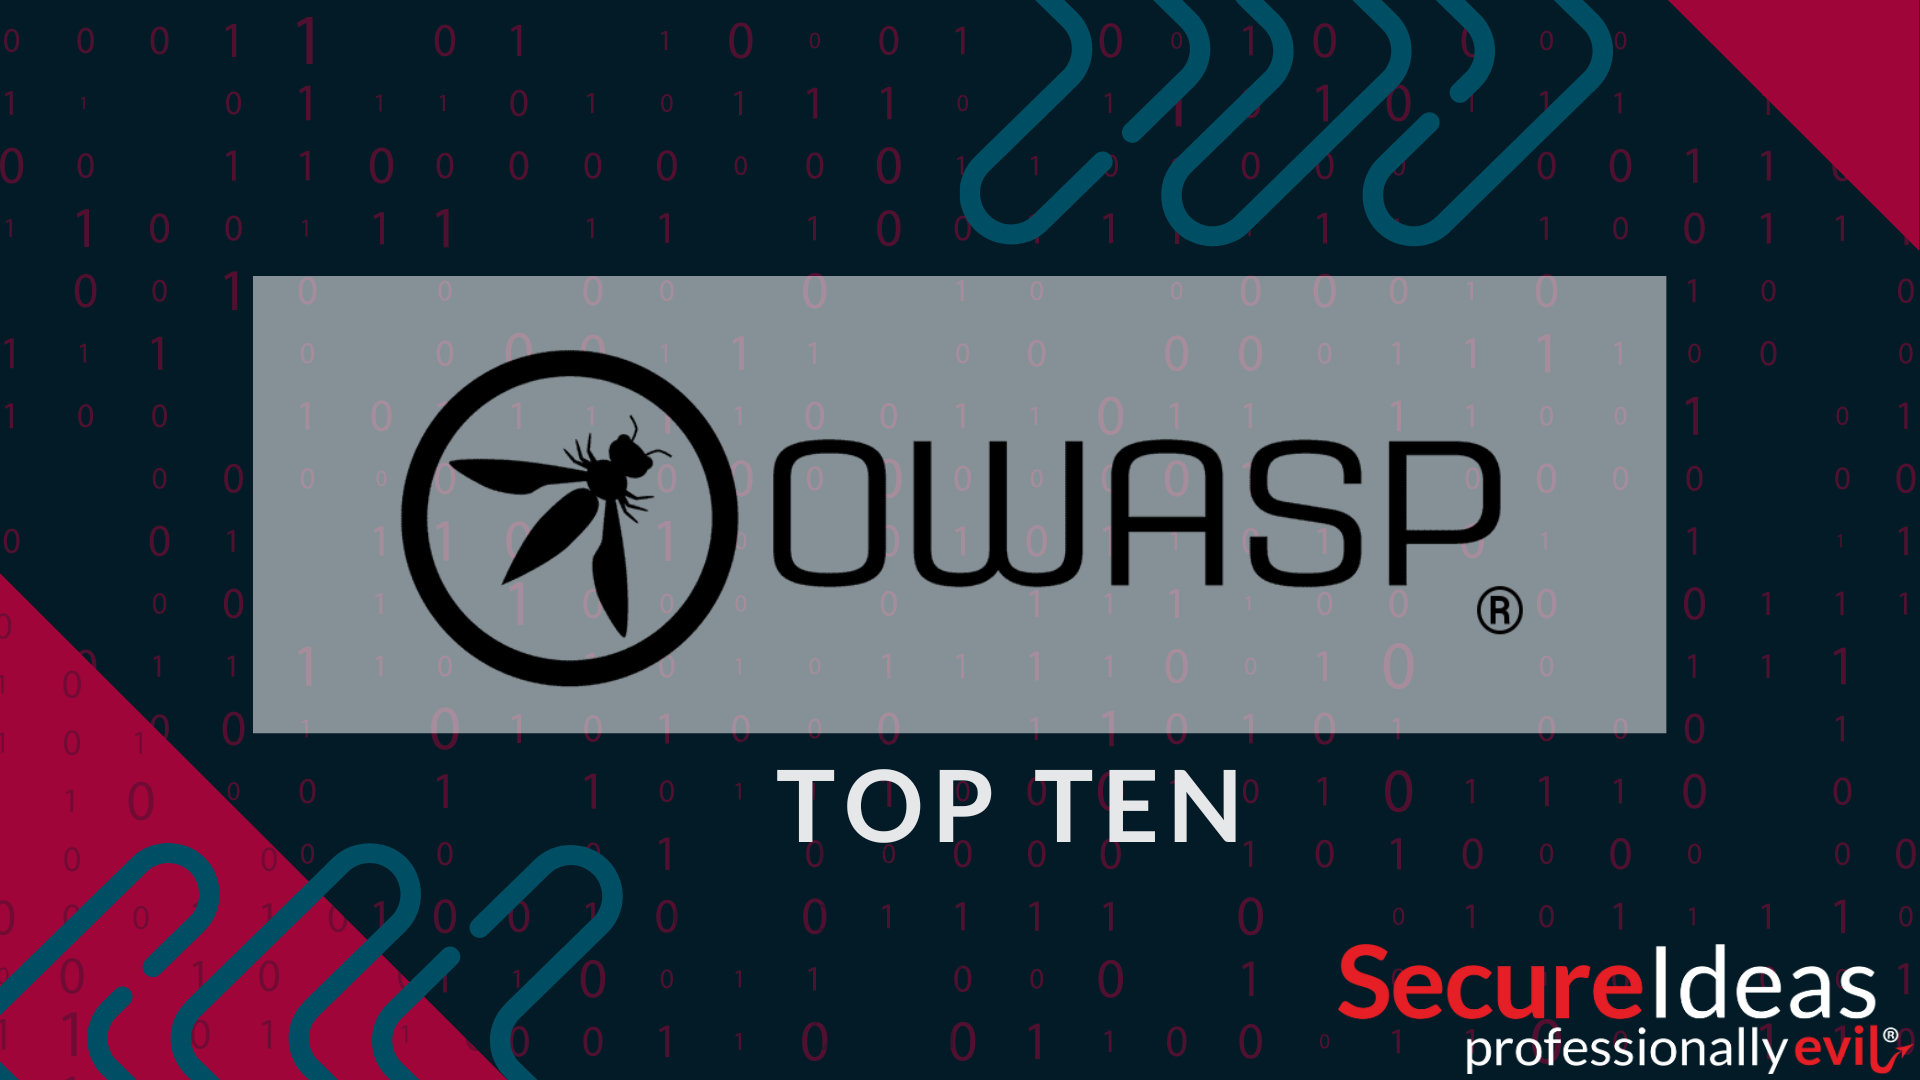 OWASP Top 10